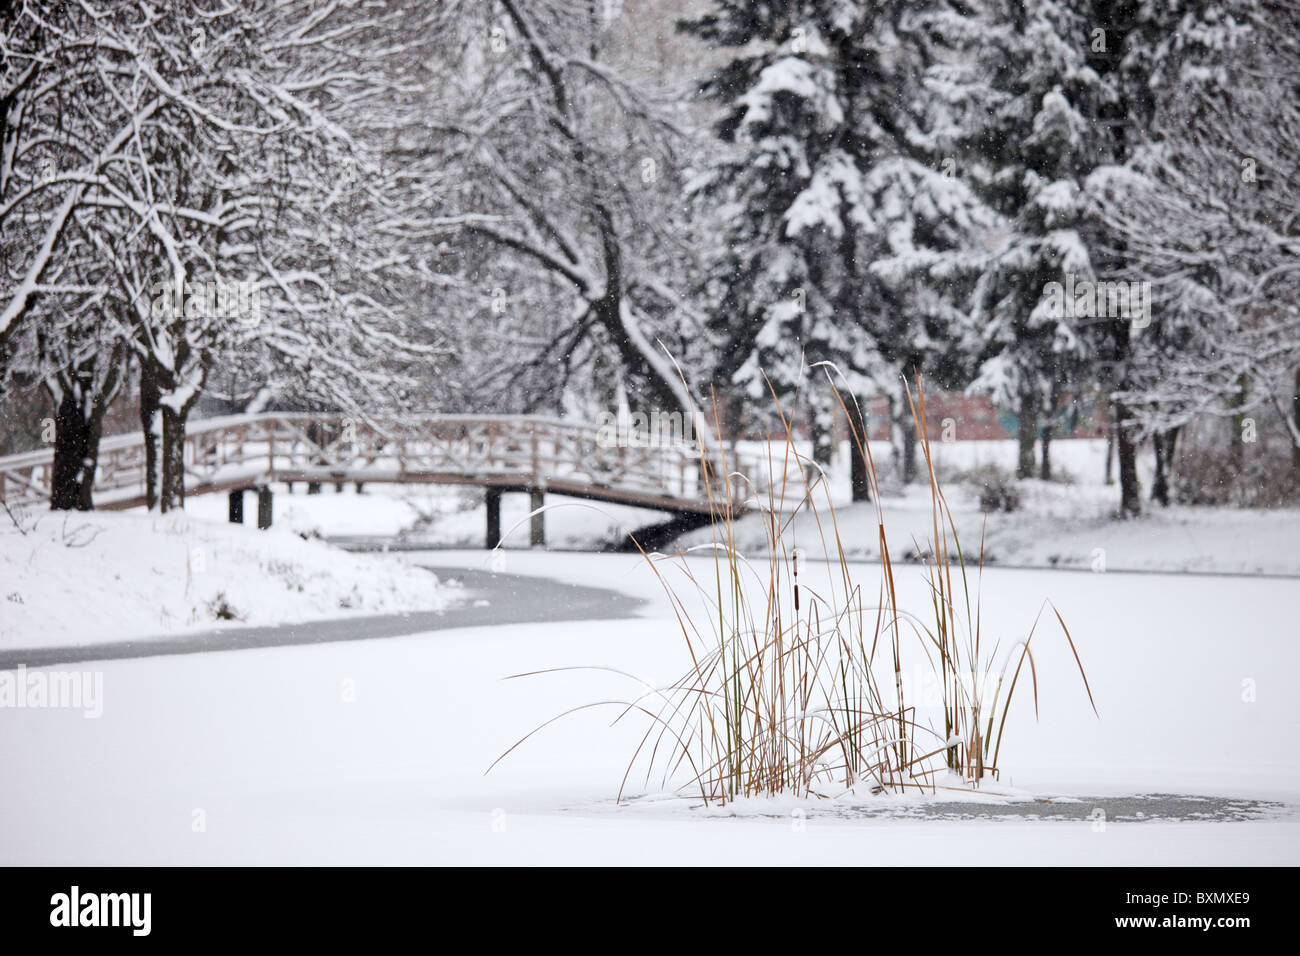 Una scena invernale dal lago ghiacciato nel parco della città di Skopje Foto Stock